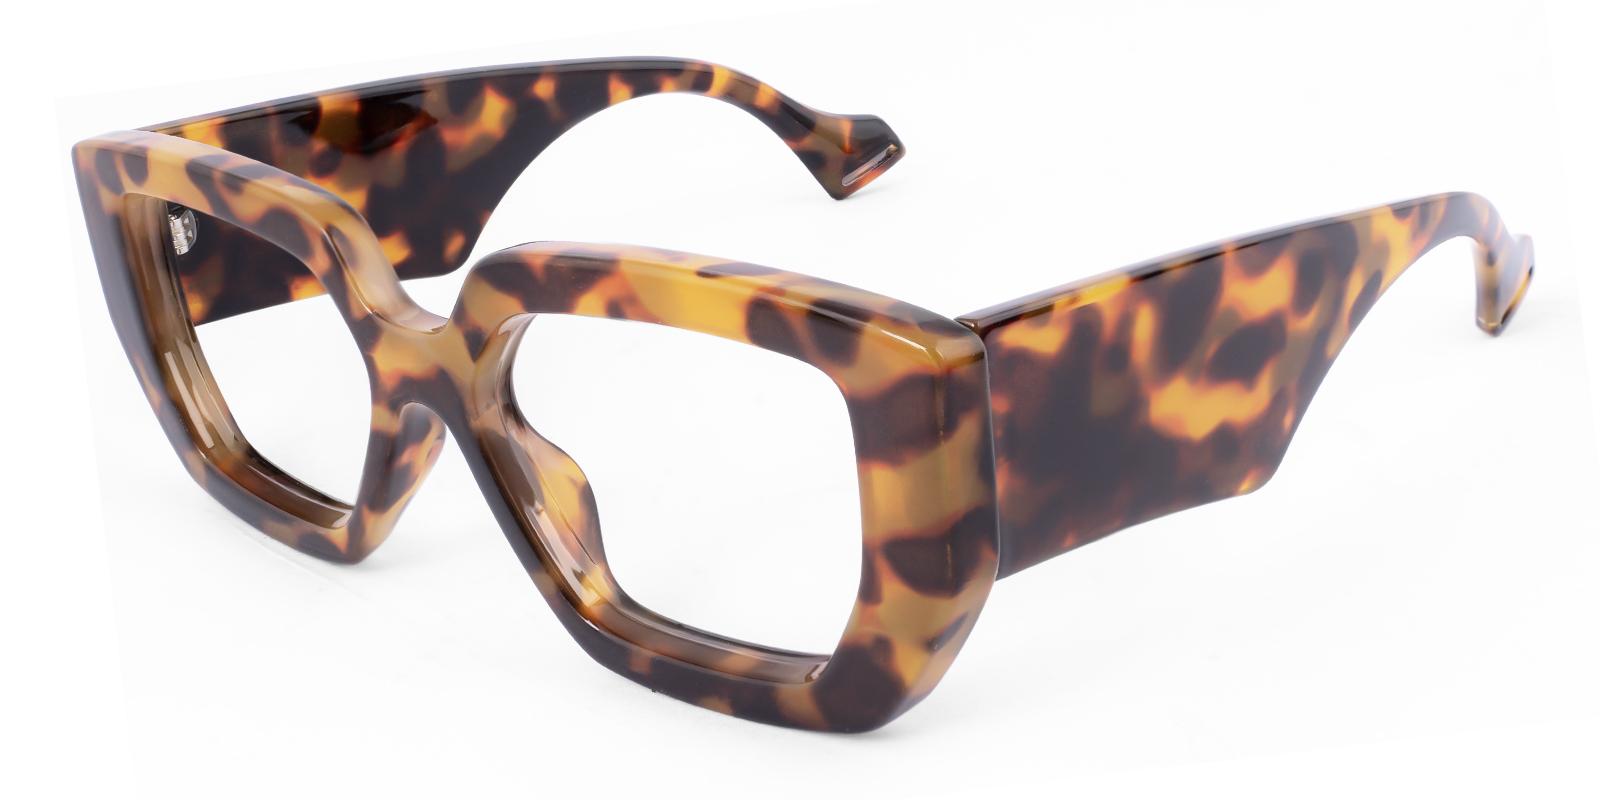 Signosity Tortoise Acetate Eyeglasses , UniversalBridgeFit Frames from ABBE Glasses